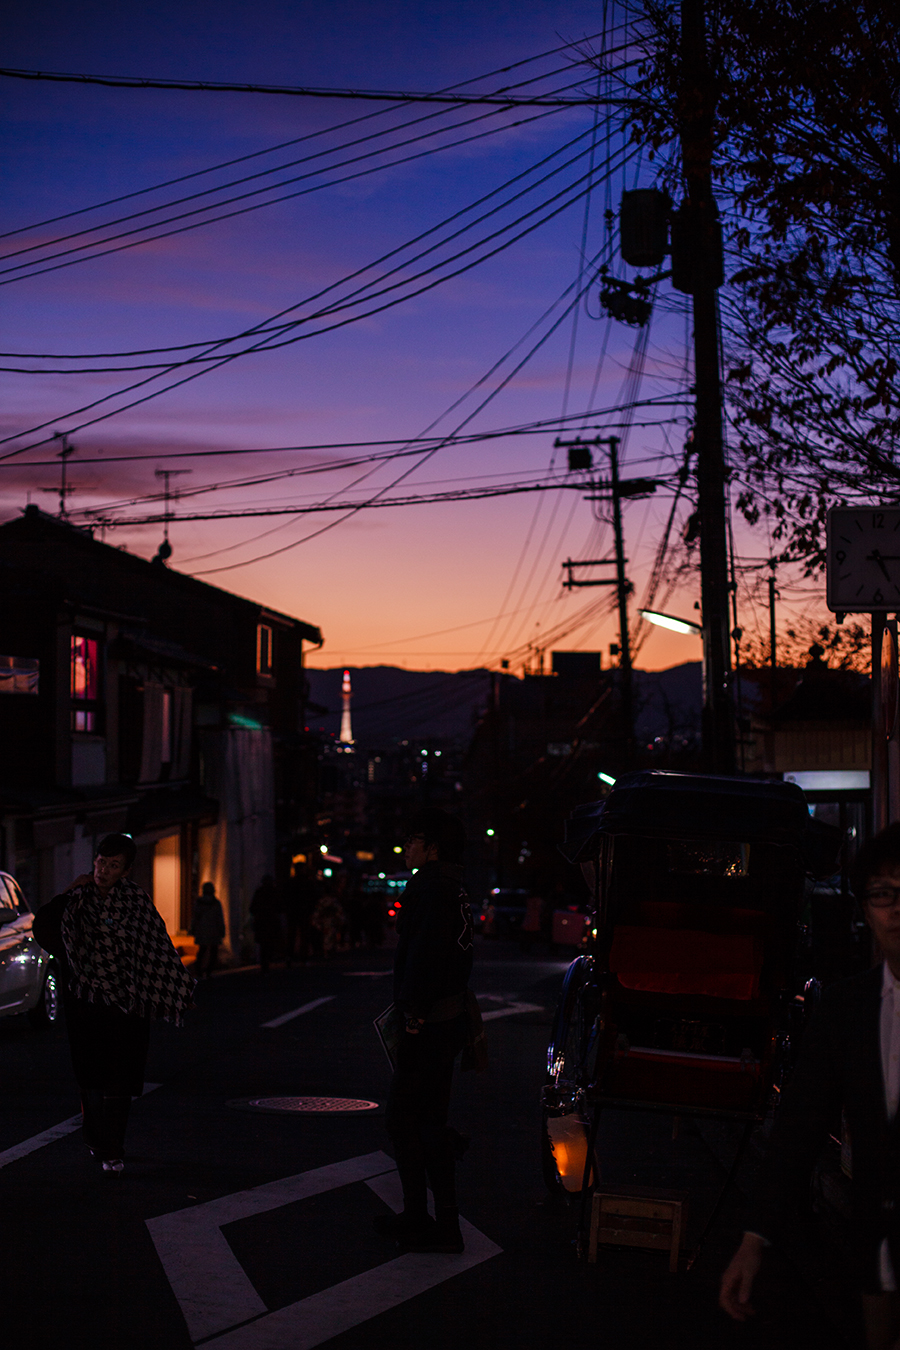 Sunset at Higashiyama, Kyoto Japan.